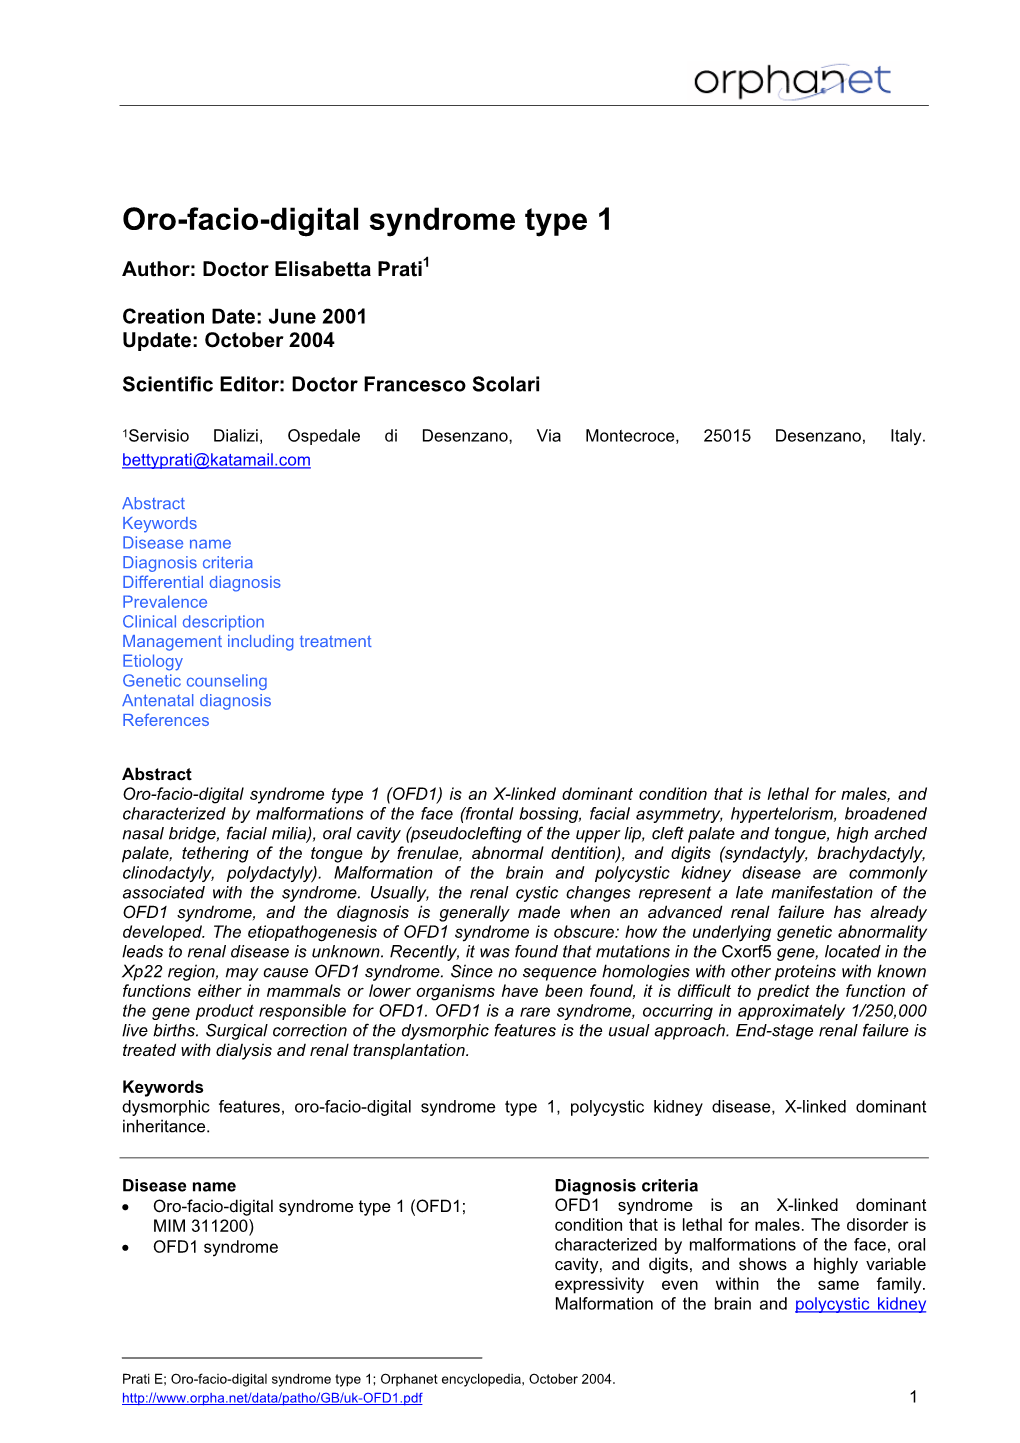 Oro-Facio-Digital Syndrome Type 1